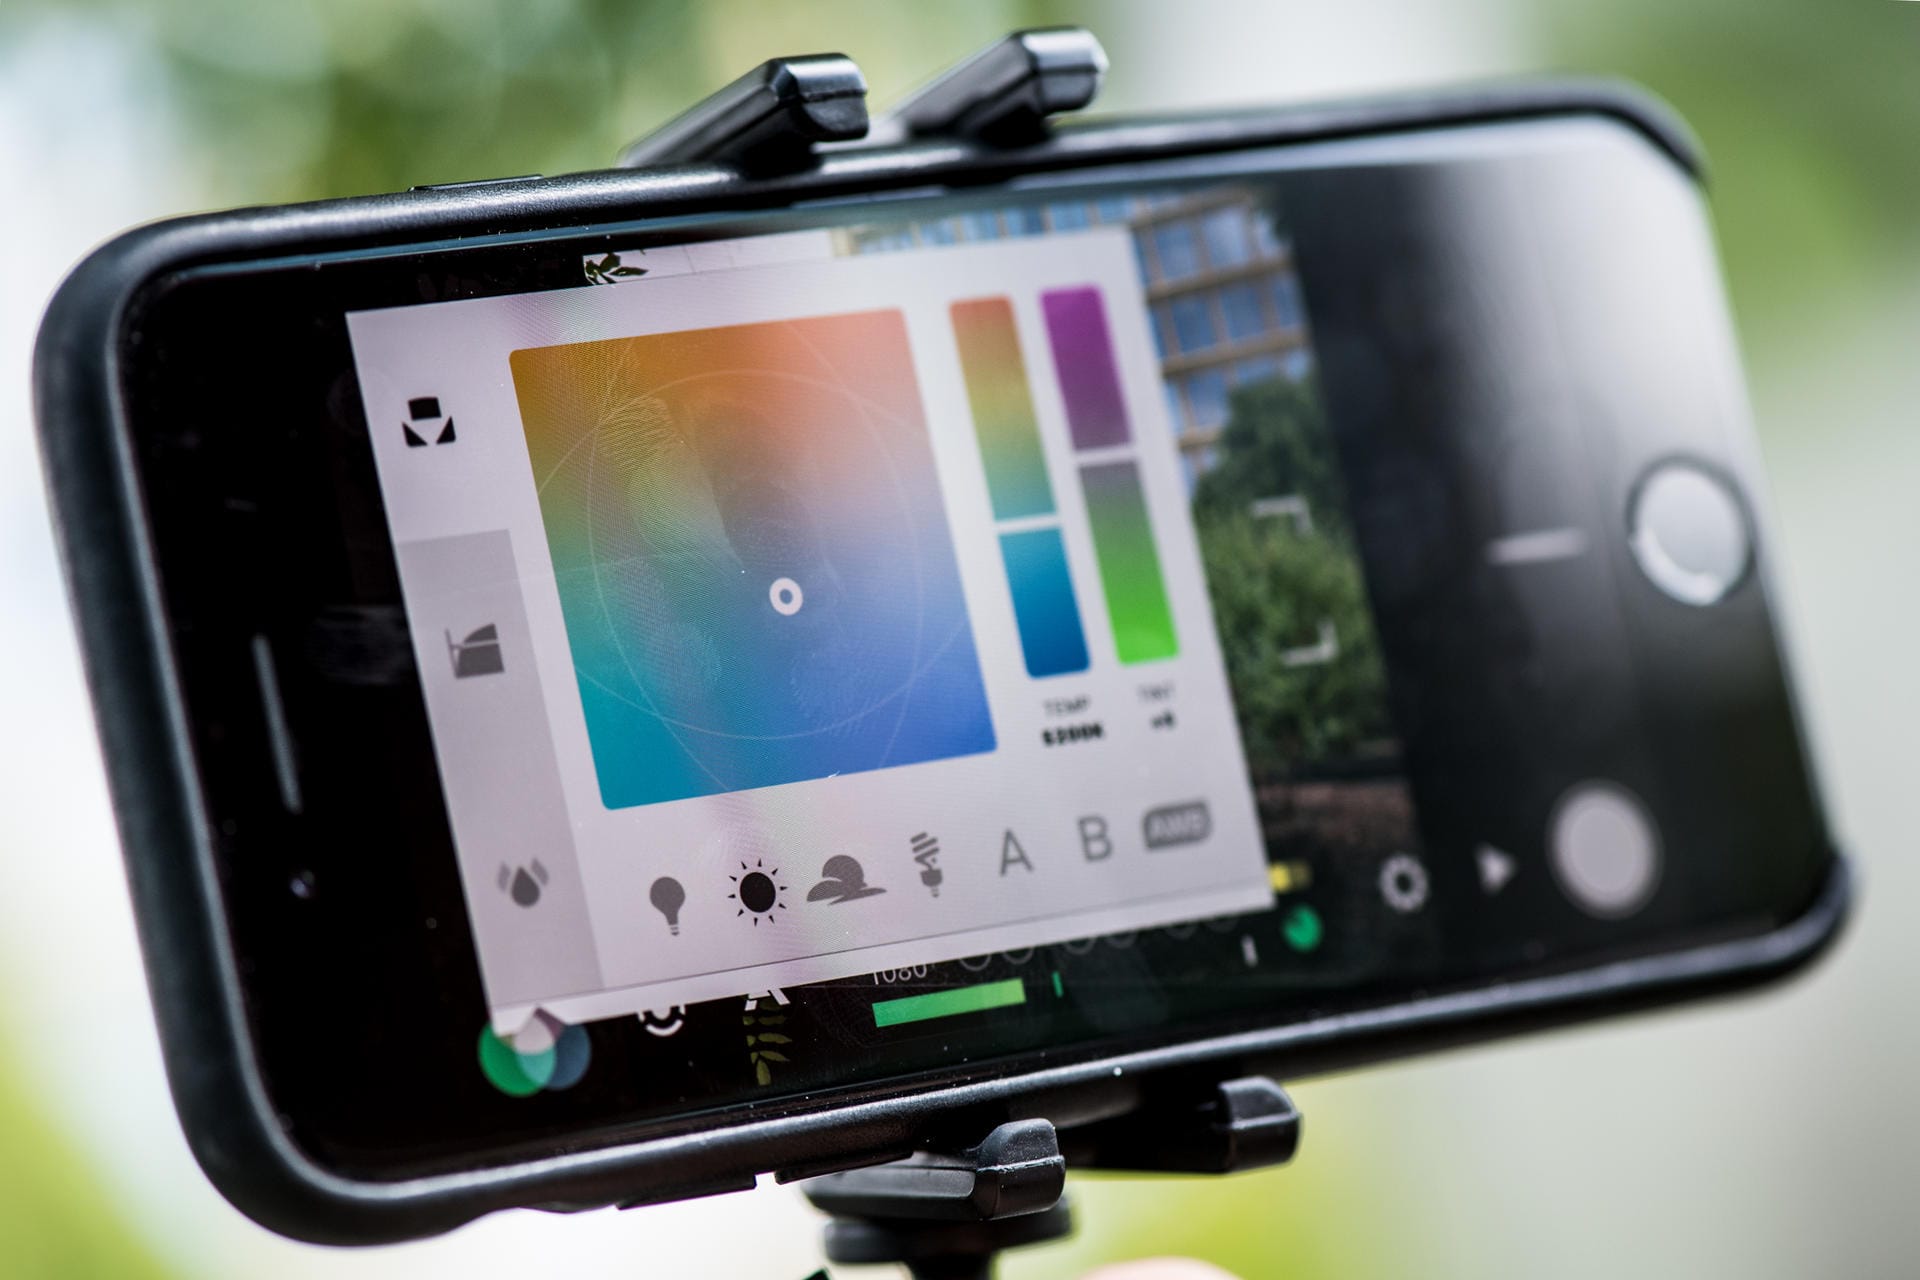 Filmen mit dem Smartphone: Belichtung, Kontrast, Sättigung, Farbton, Farbtemperatur – es lassen sich eine Menge Parameter beim Filmen mit dem Smartphone einstellen.